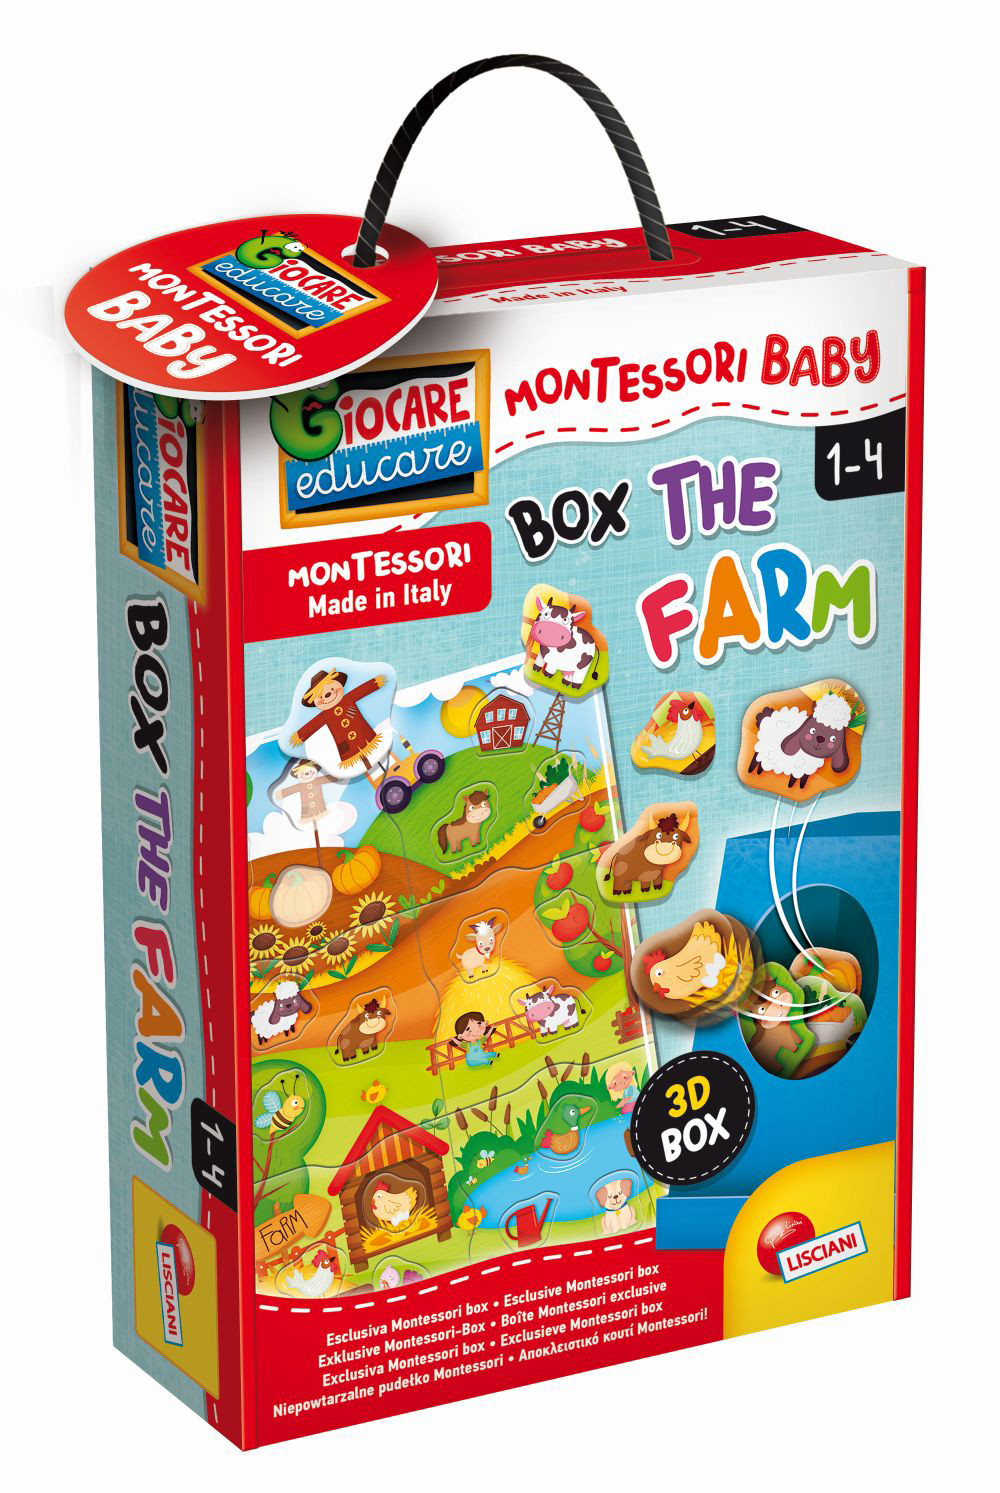 MONTESSORI BABY BOX THE FARM - Insert